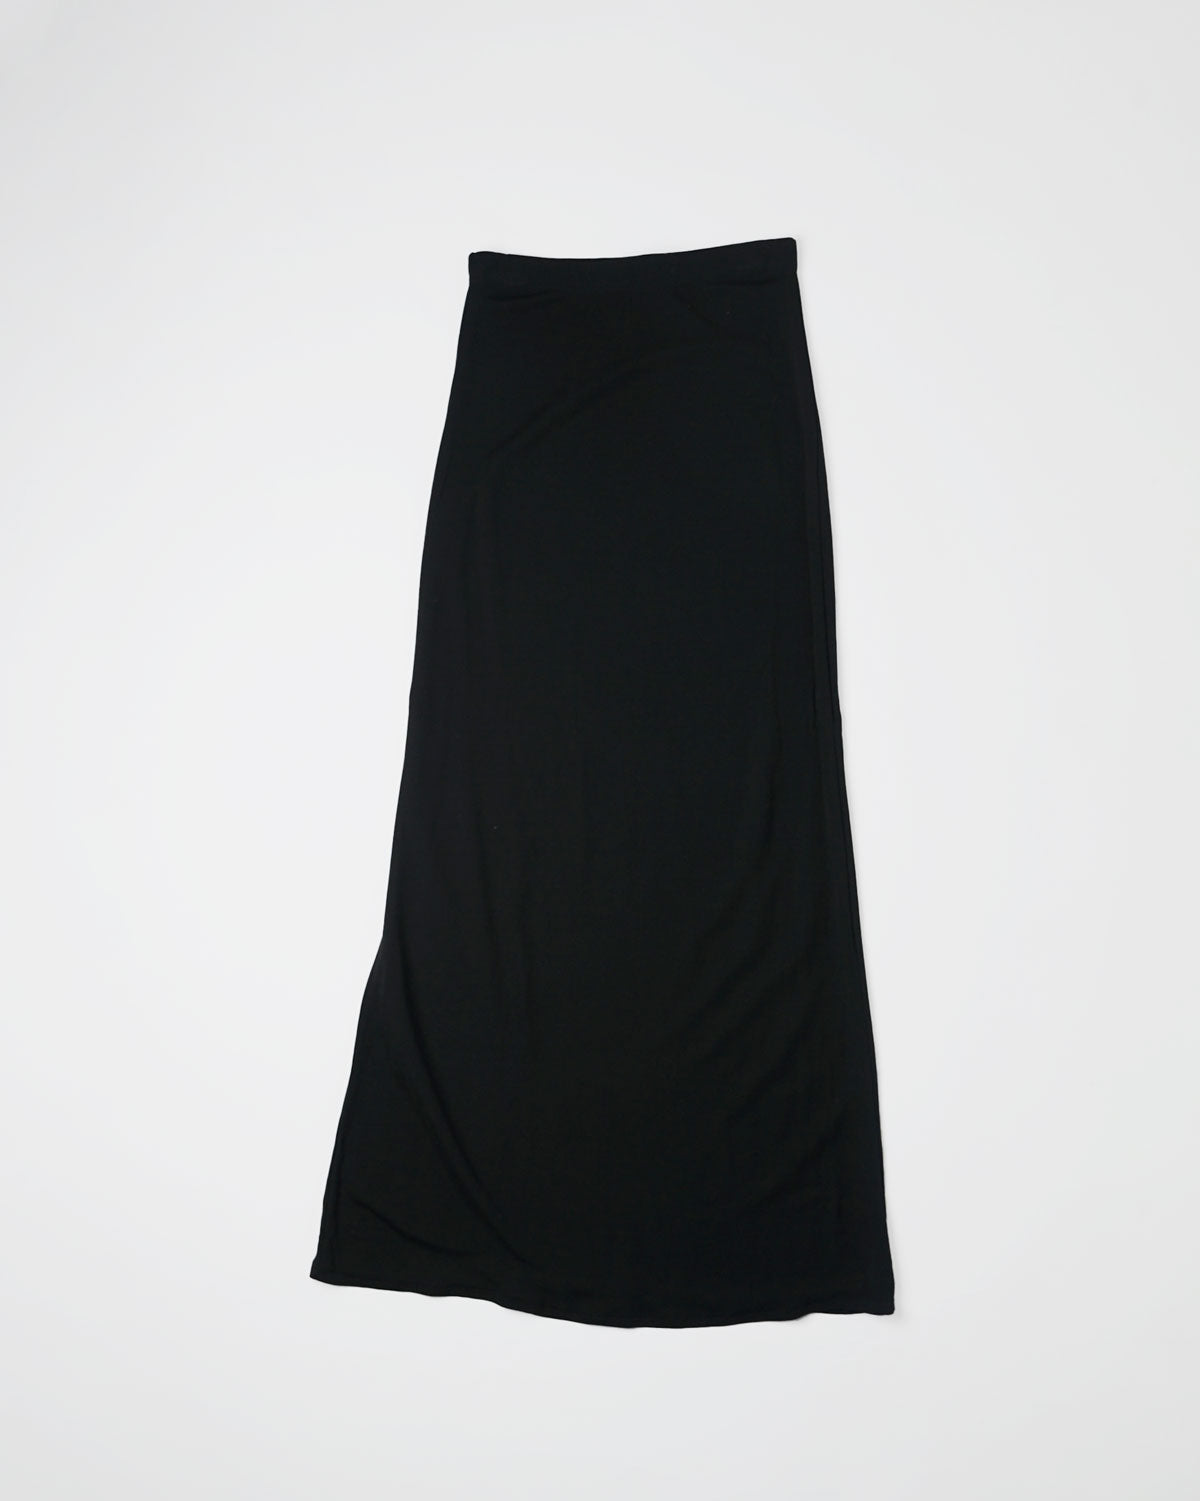 Spandex Long Skirt